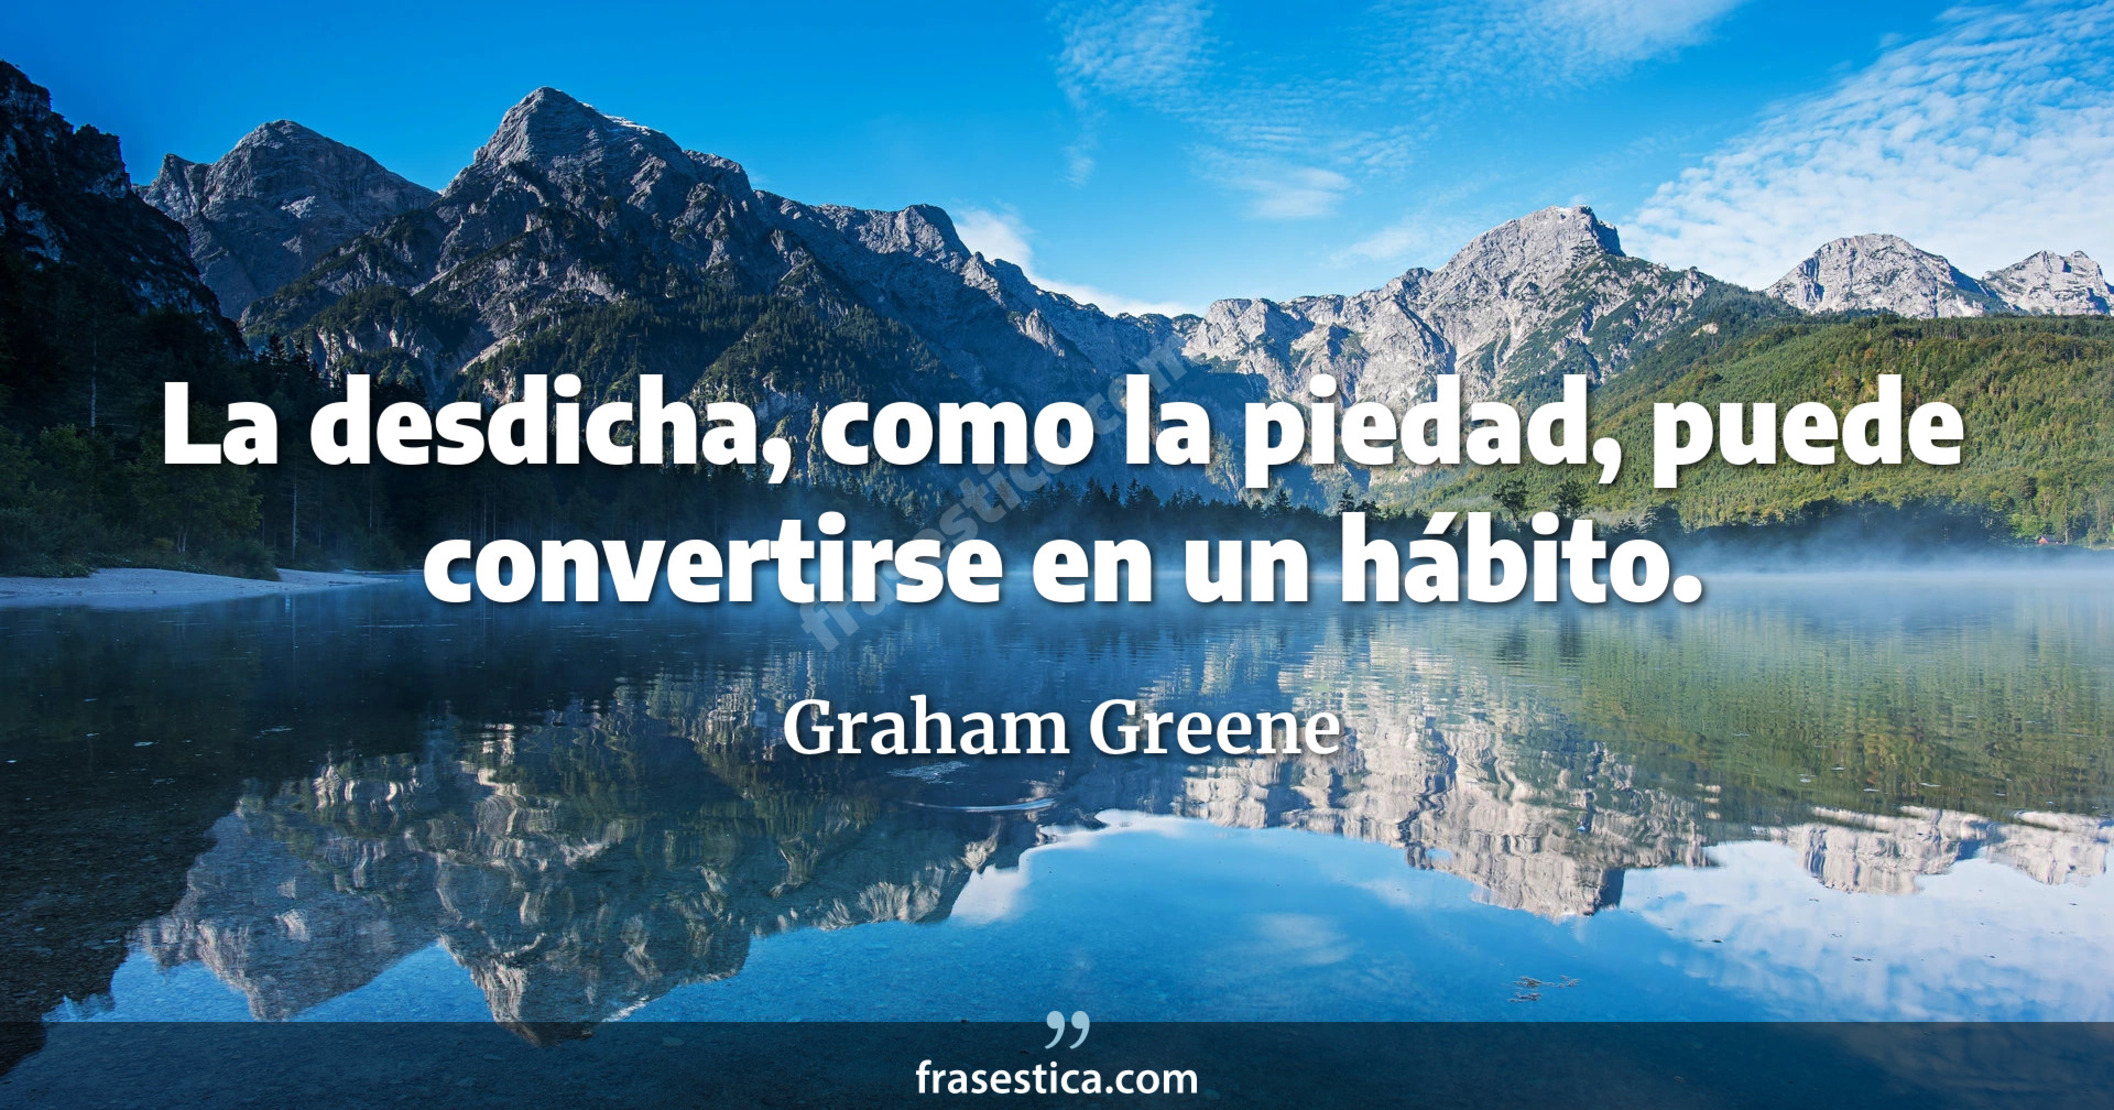 La desdicha, como la piedad, puede convertirse en un hábito. - Graham Greene